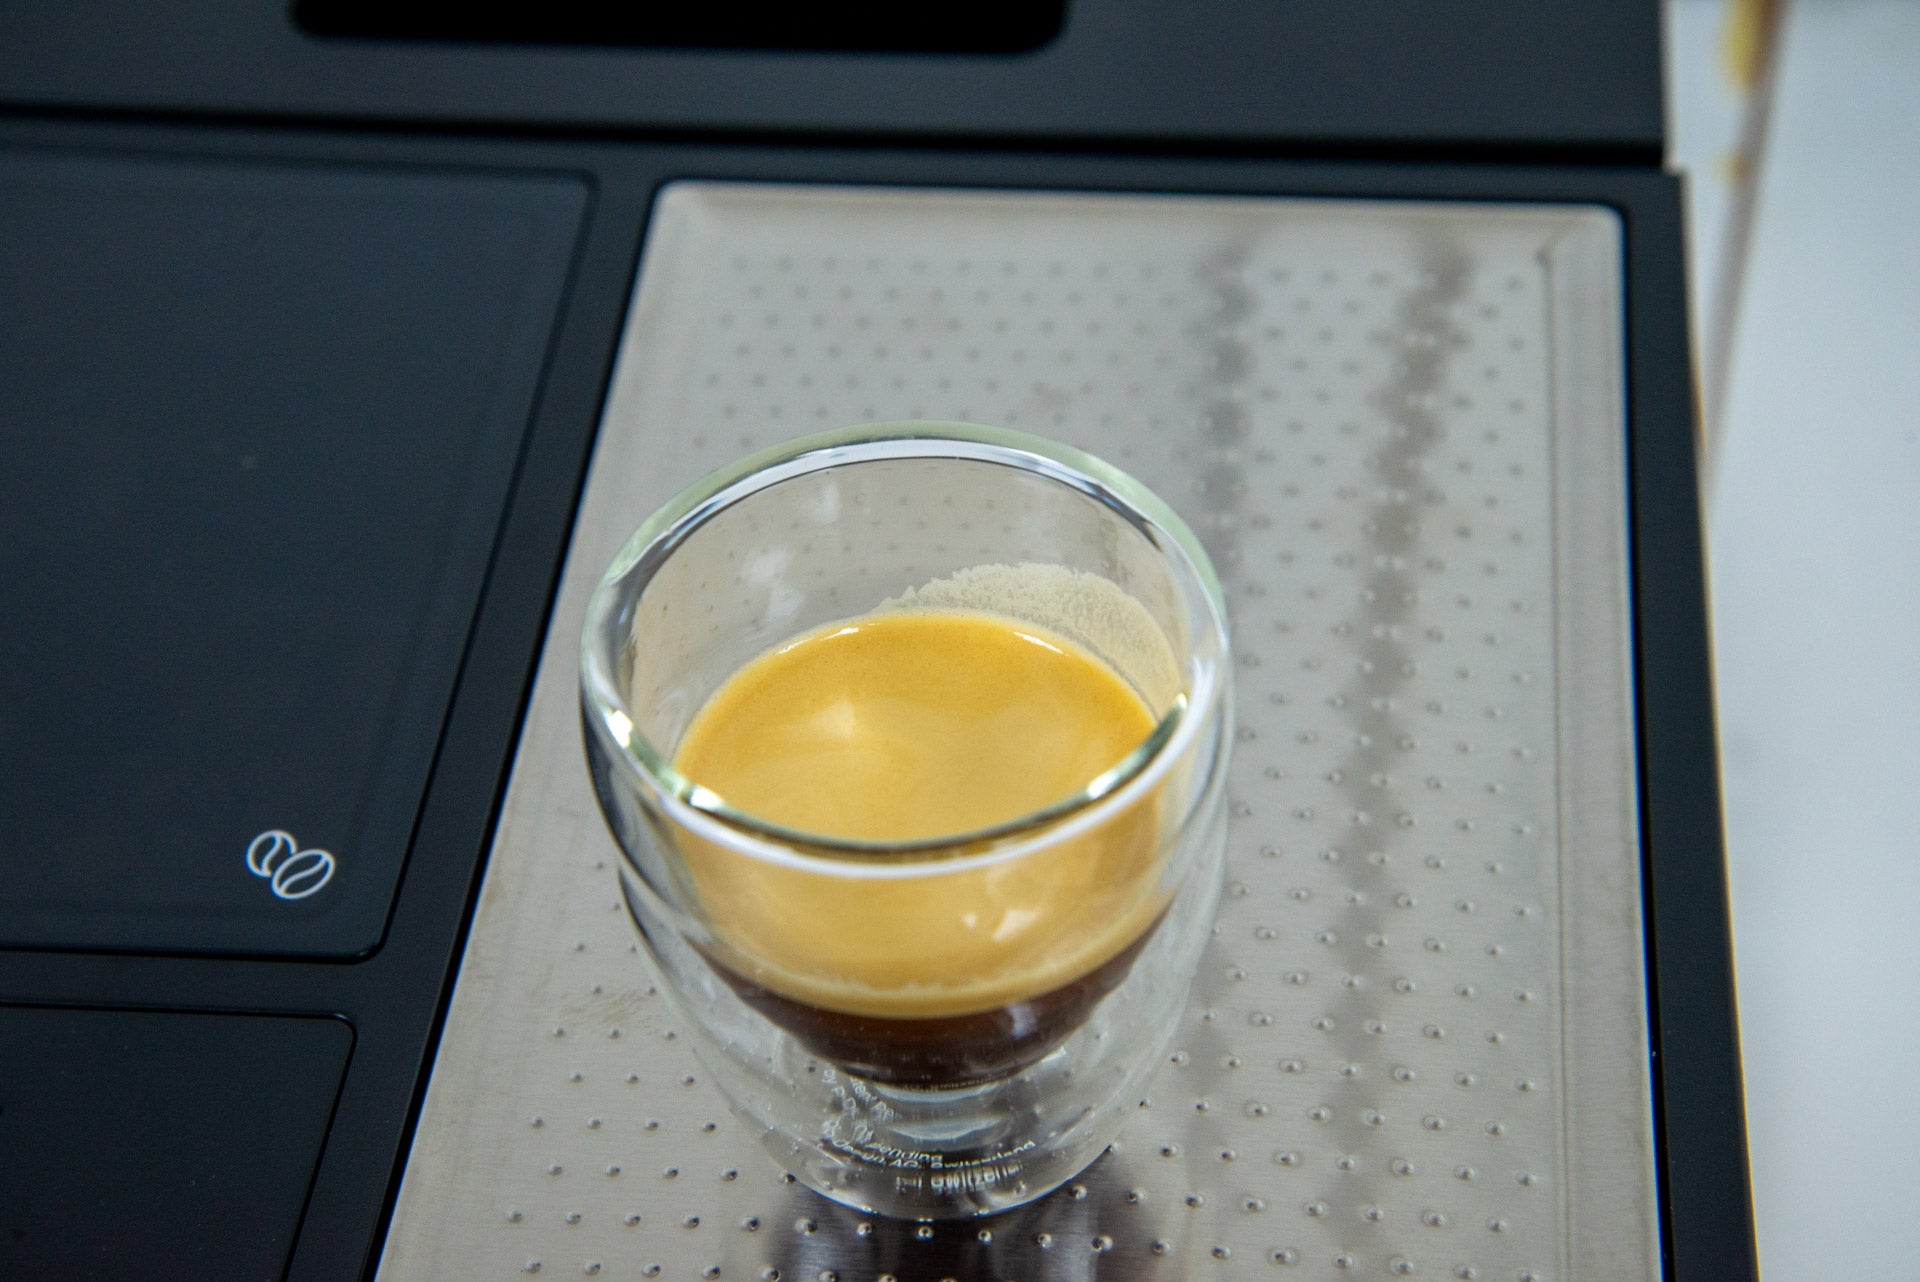 Beko CaffeExperto Máquina de café en grano a taza Varita de vapor expreso final